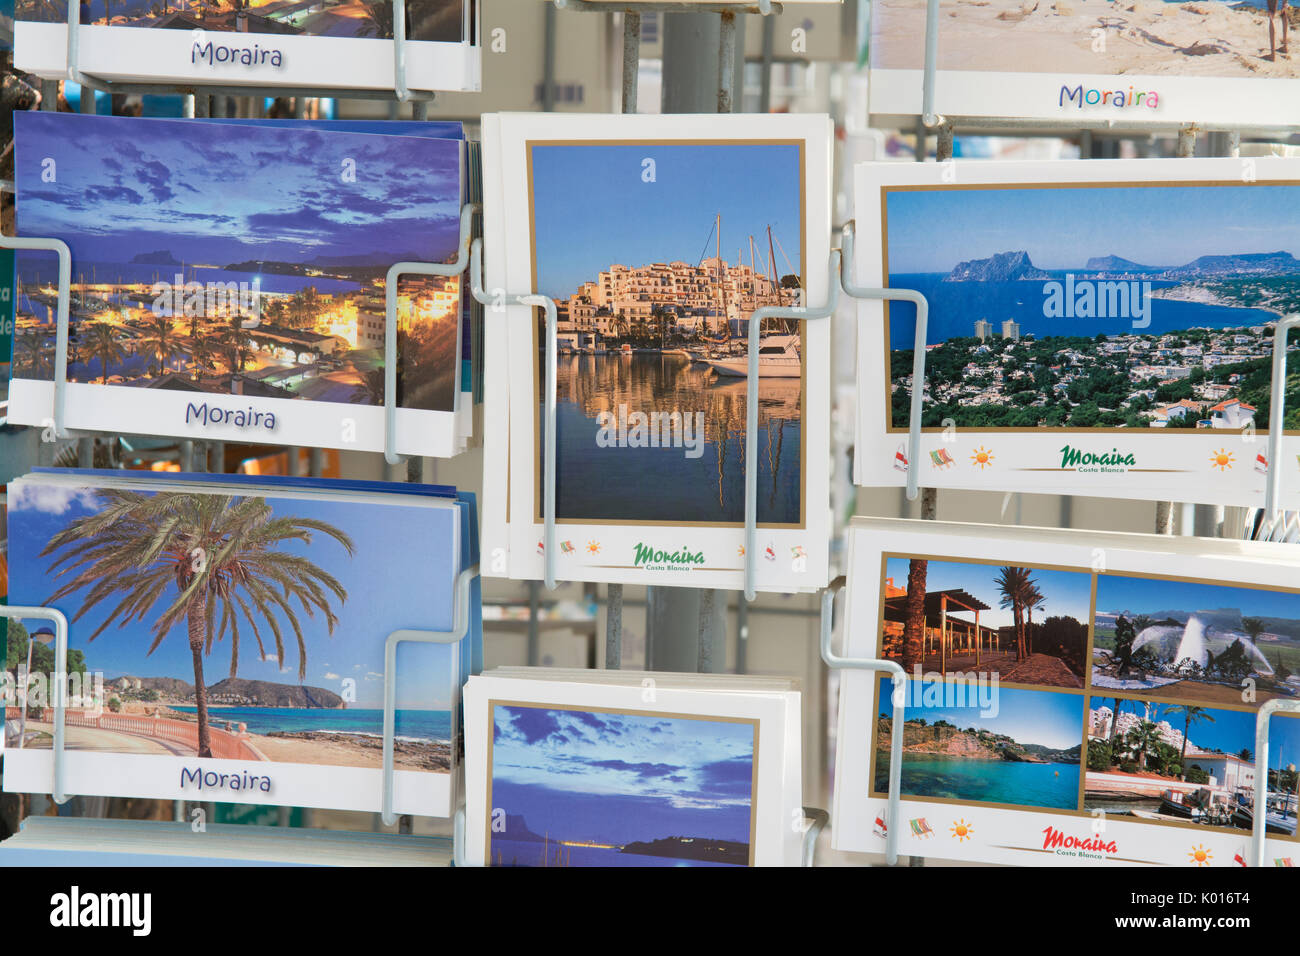 Moraira cartoline, Moraira, Alicante, Costa Blanca, Spagna Foto Stock